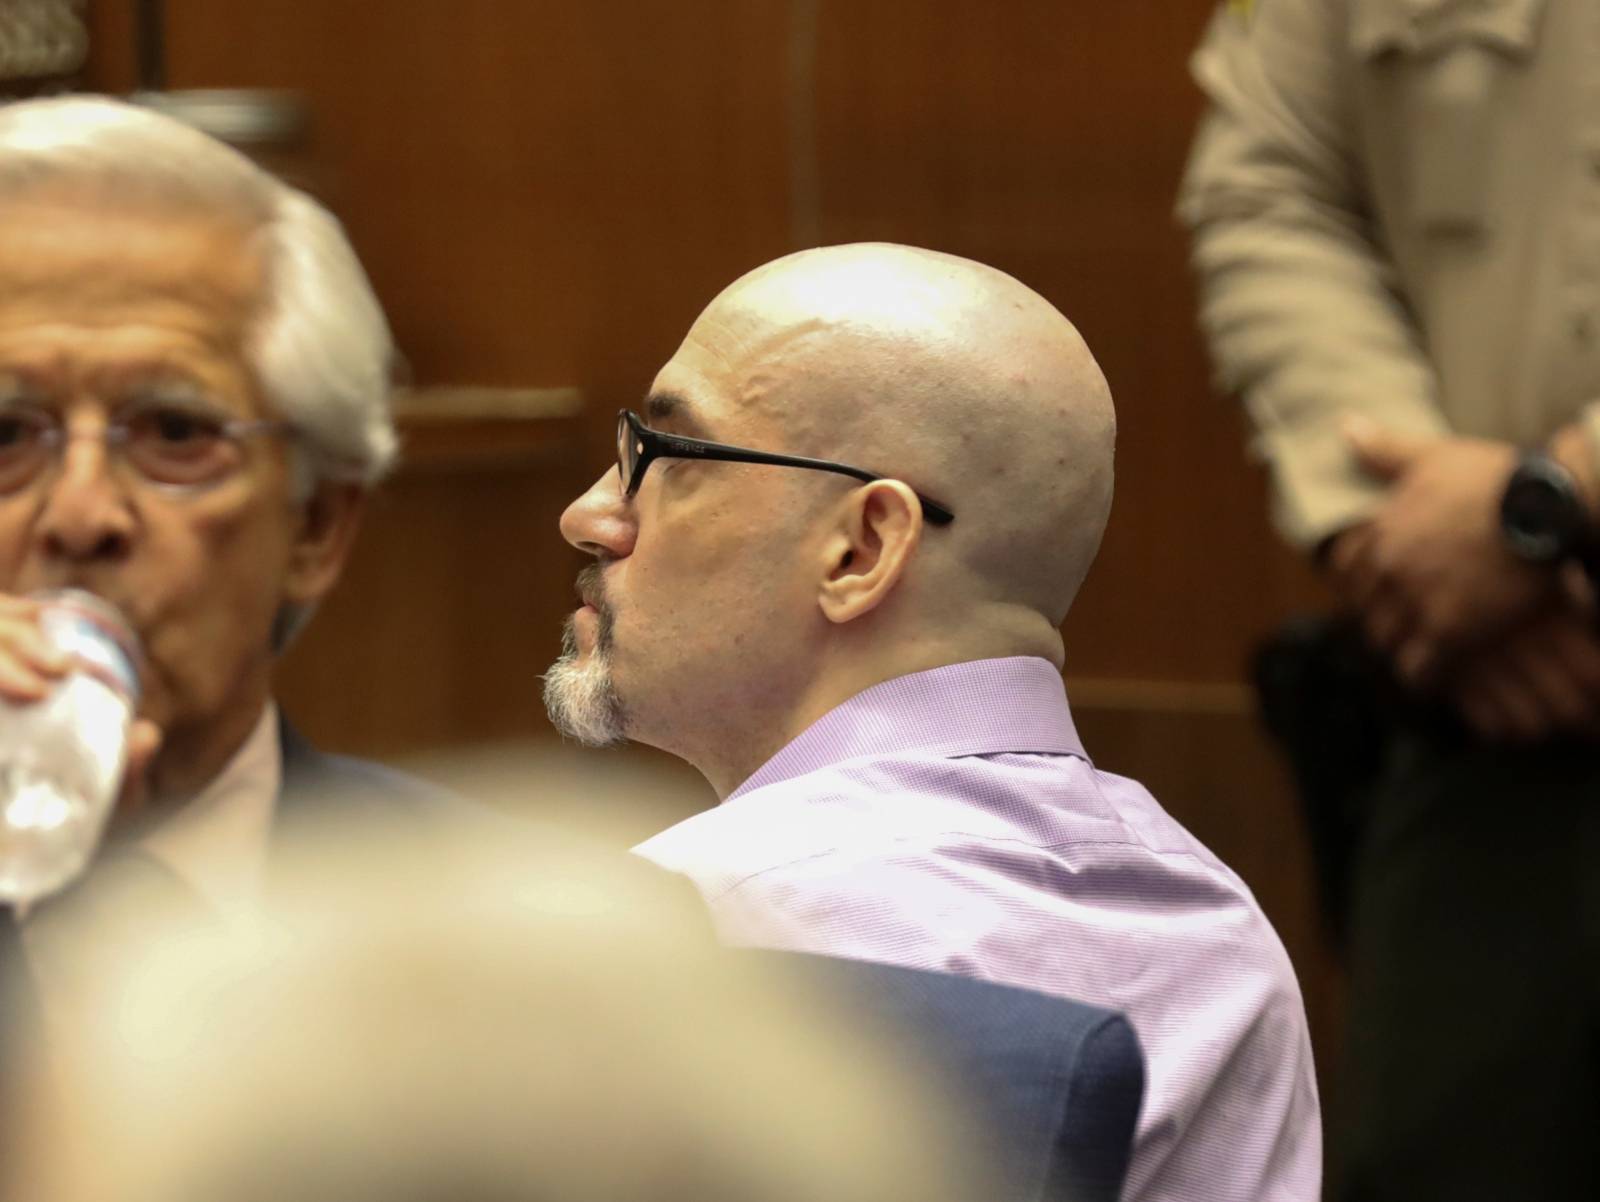 Michael Thomas Gargiulo attends his trial in Los Angeles